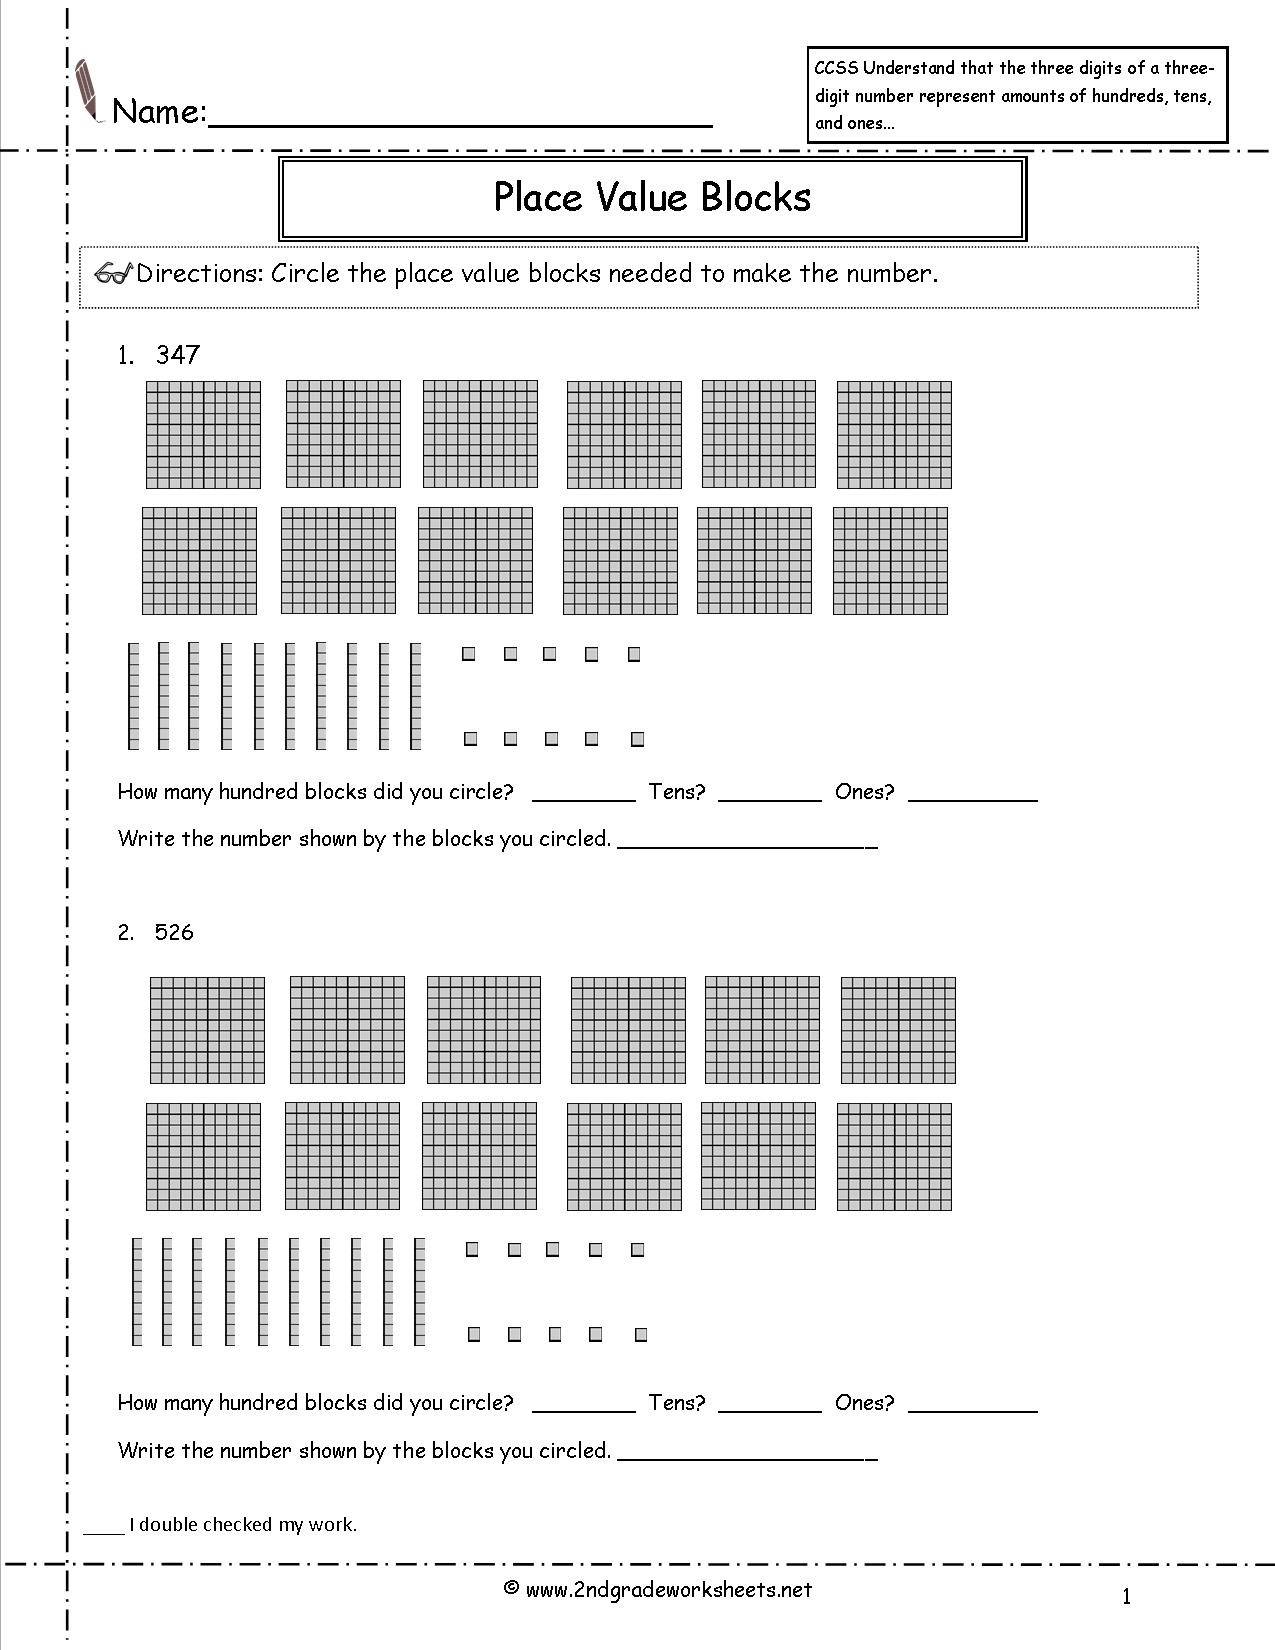 Place Value Blocks Worksheets 2nd Grade